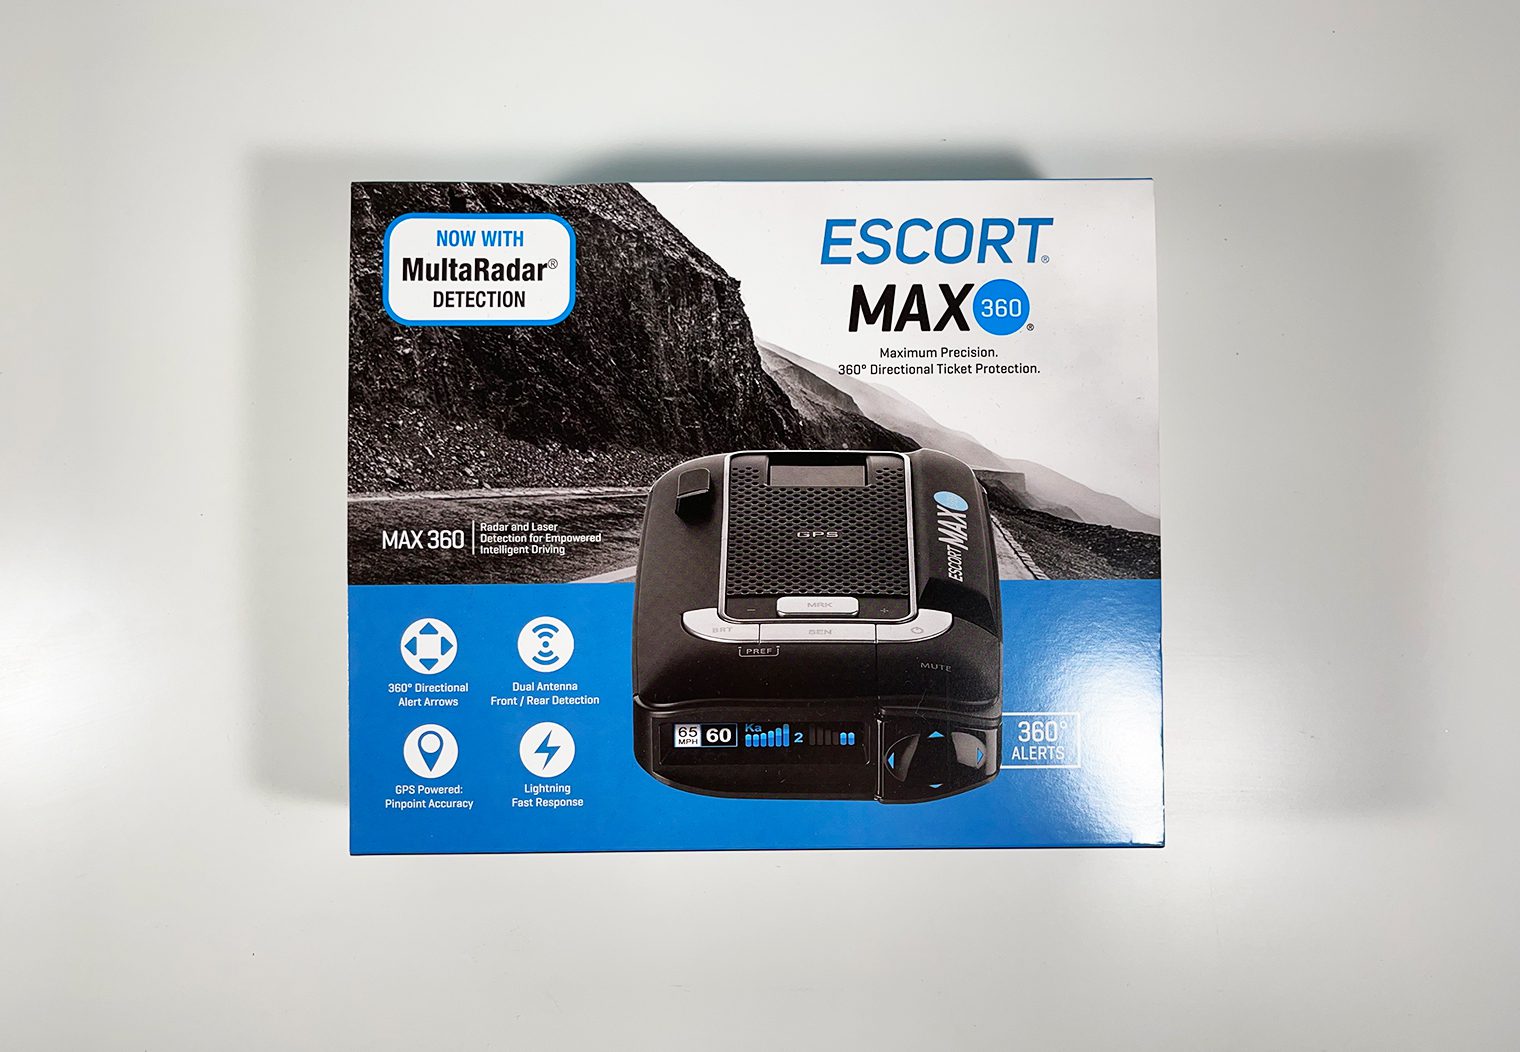 Escort MAX 360 in the box